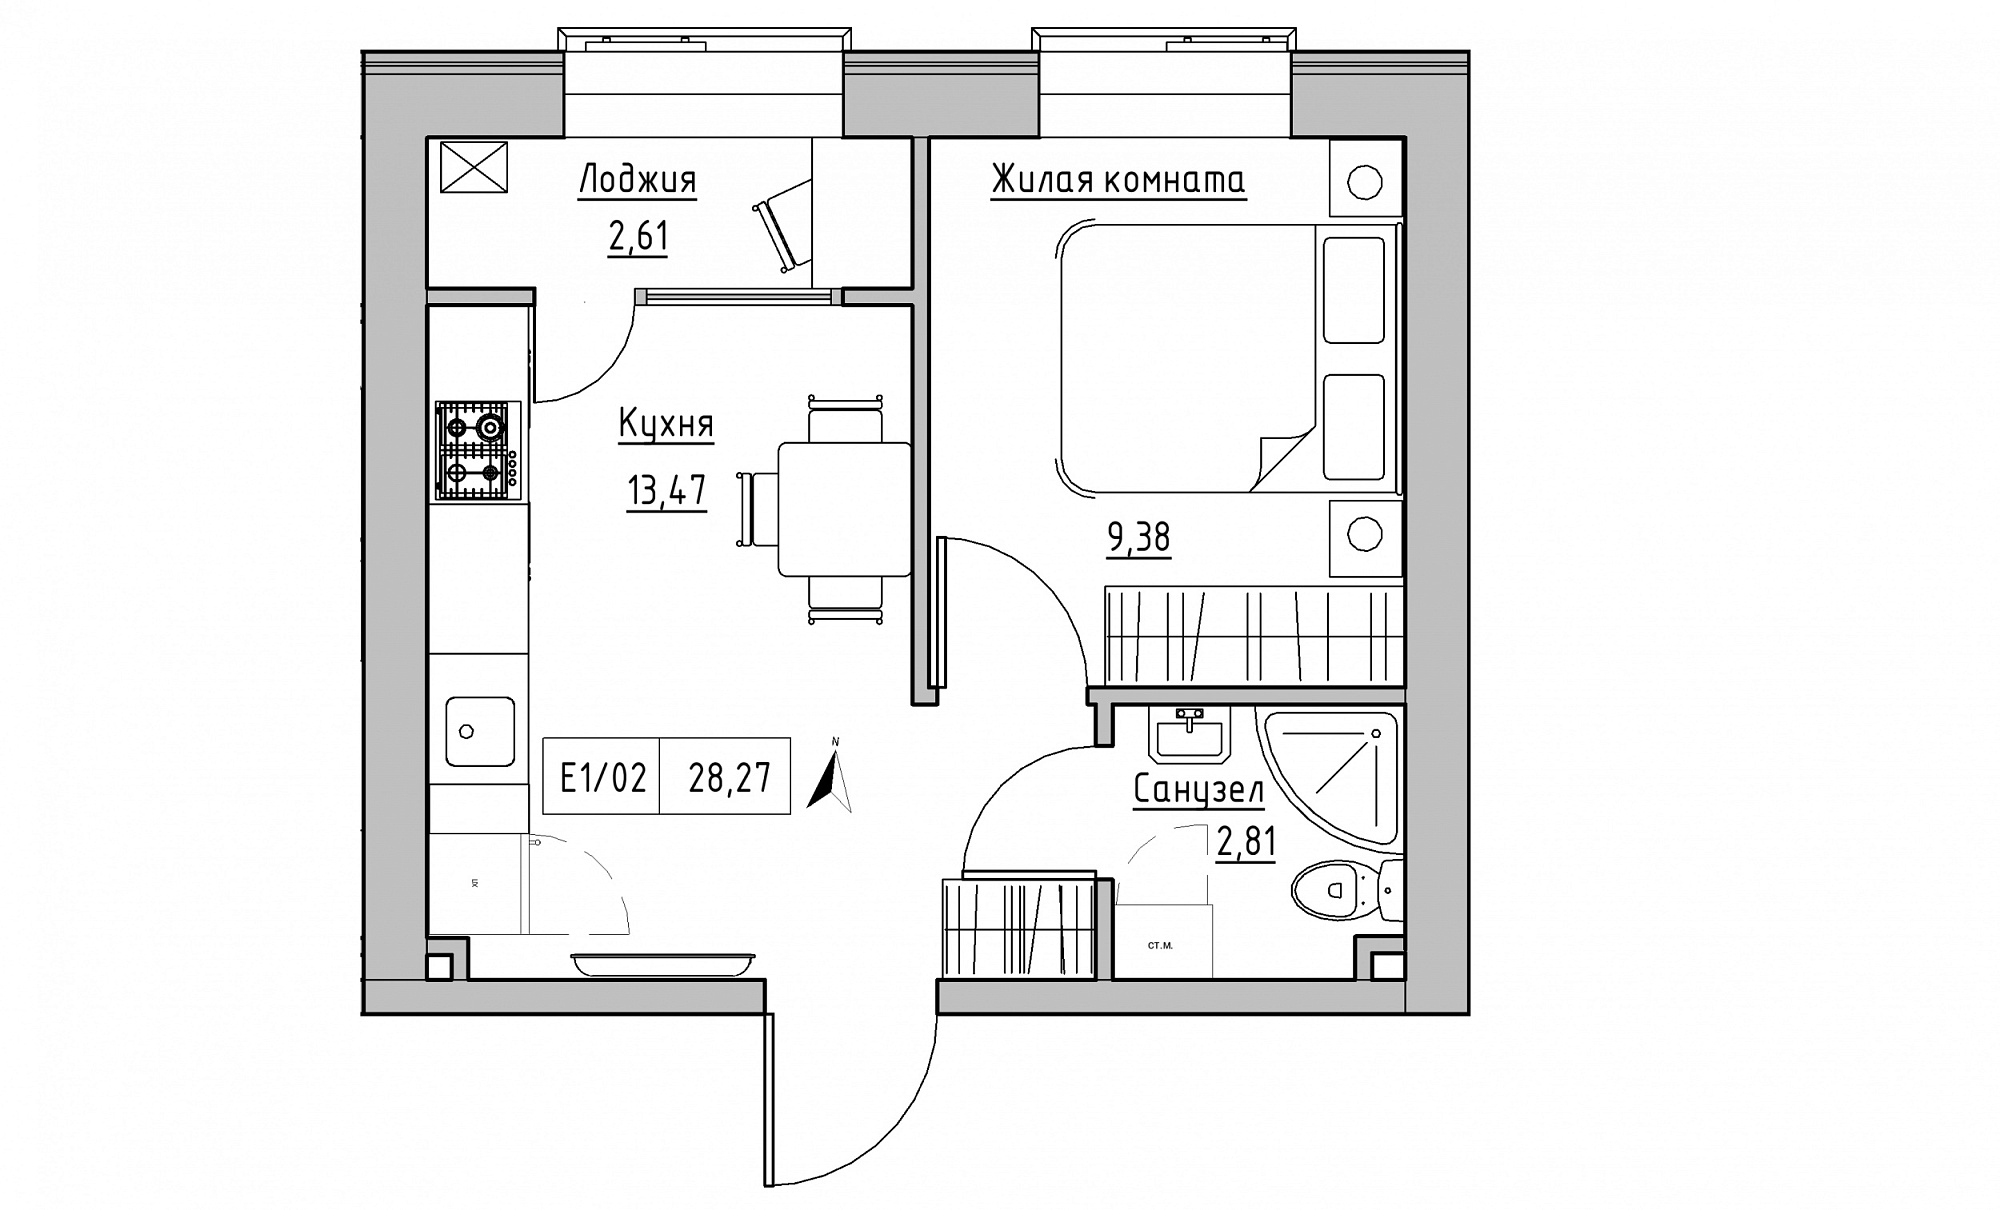 Планировка 1-к квартира площей 28.27м2, KS-015-05/0018.